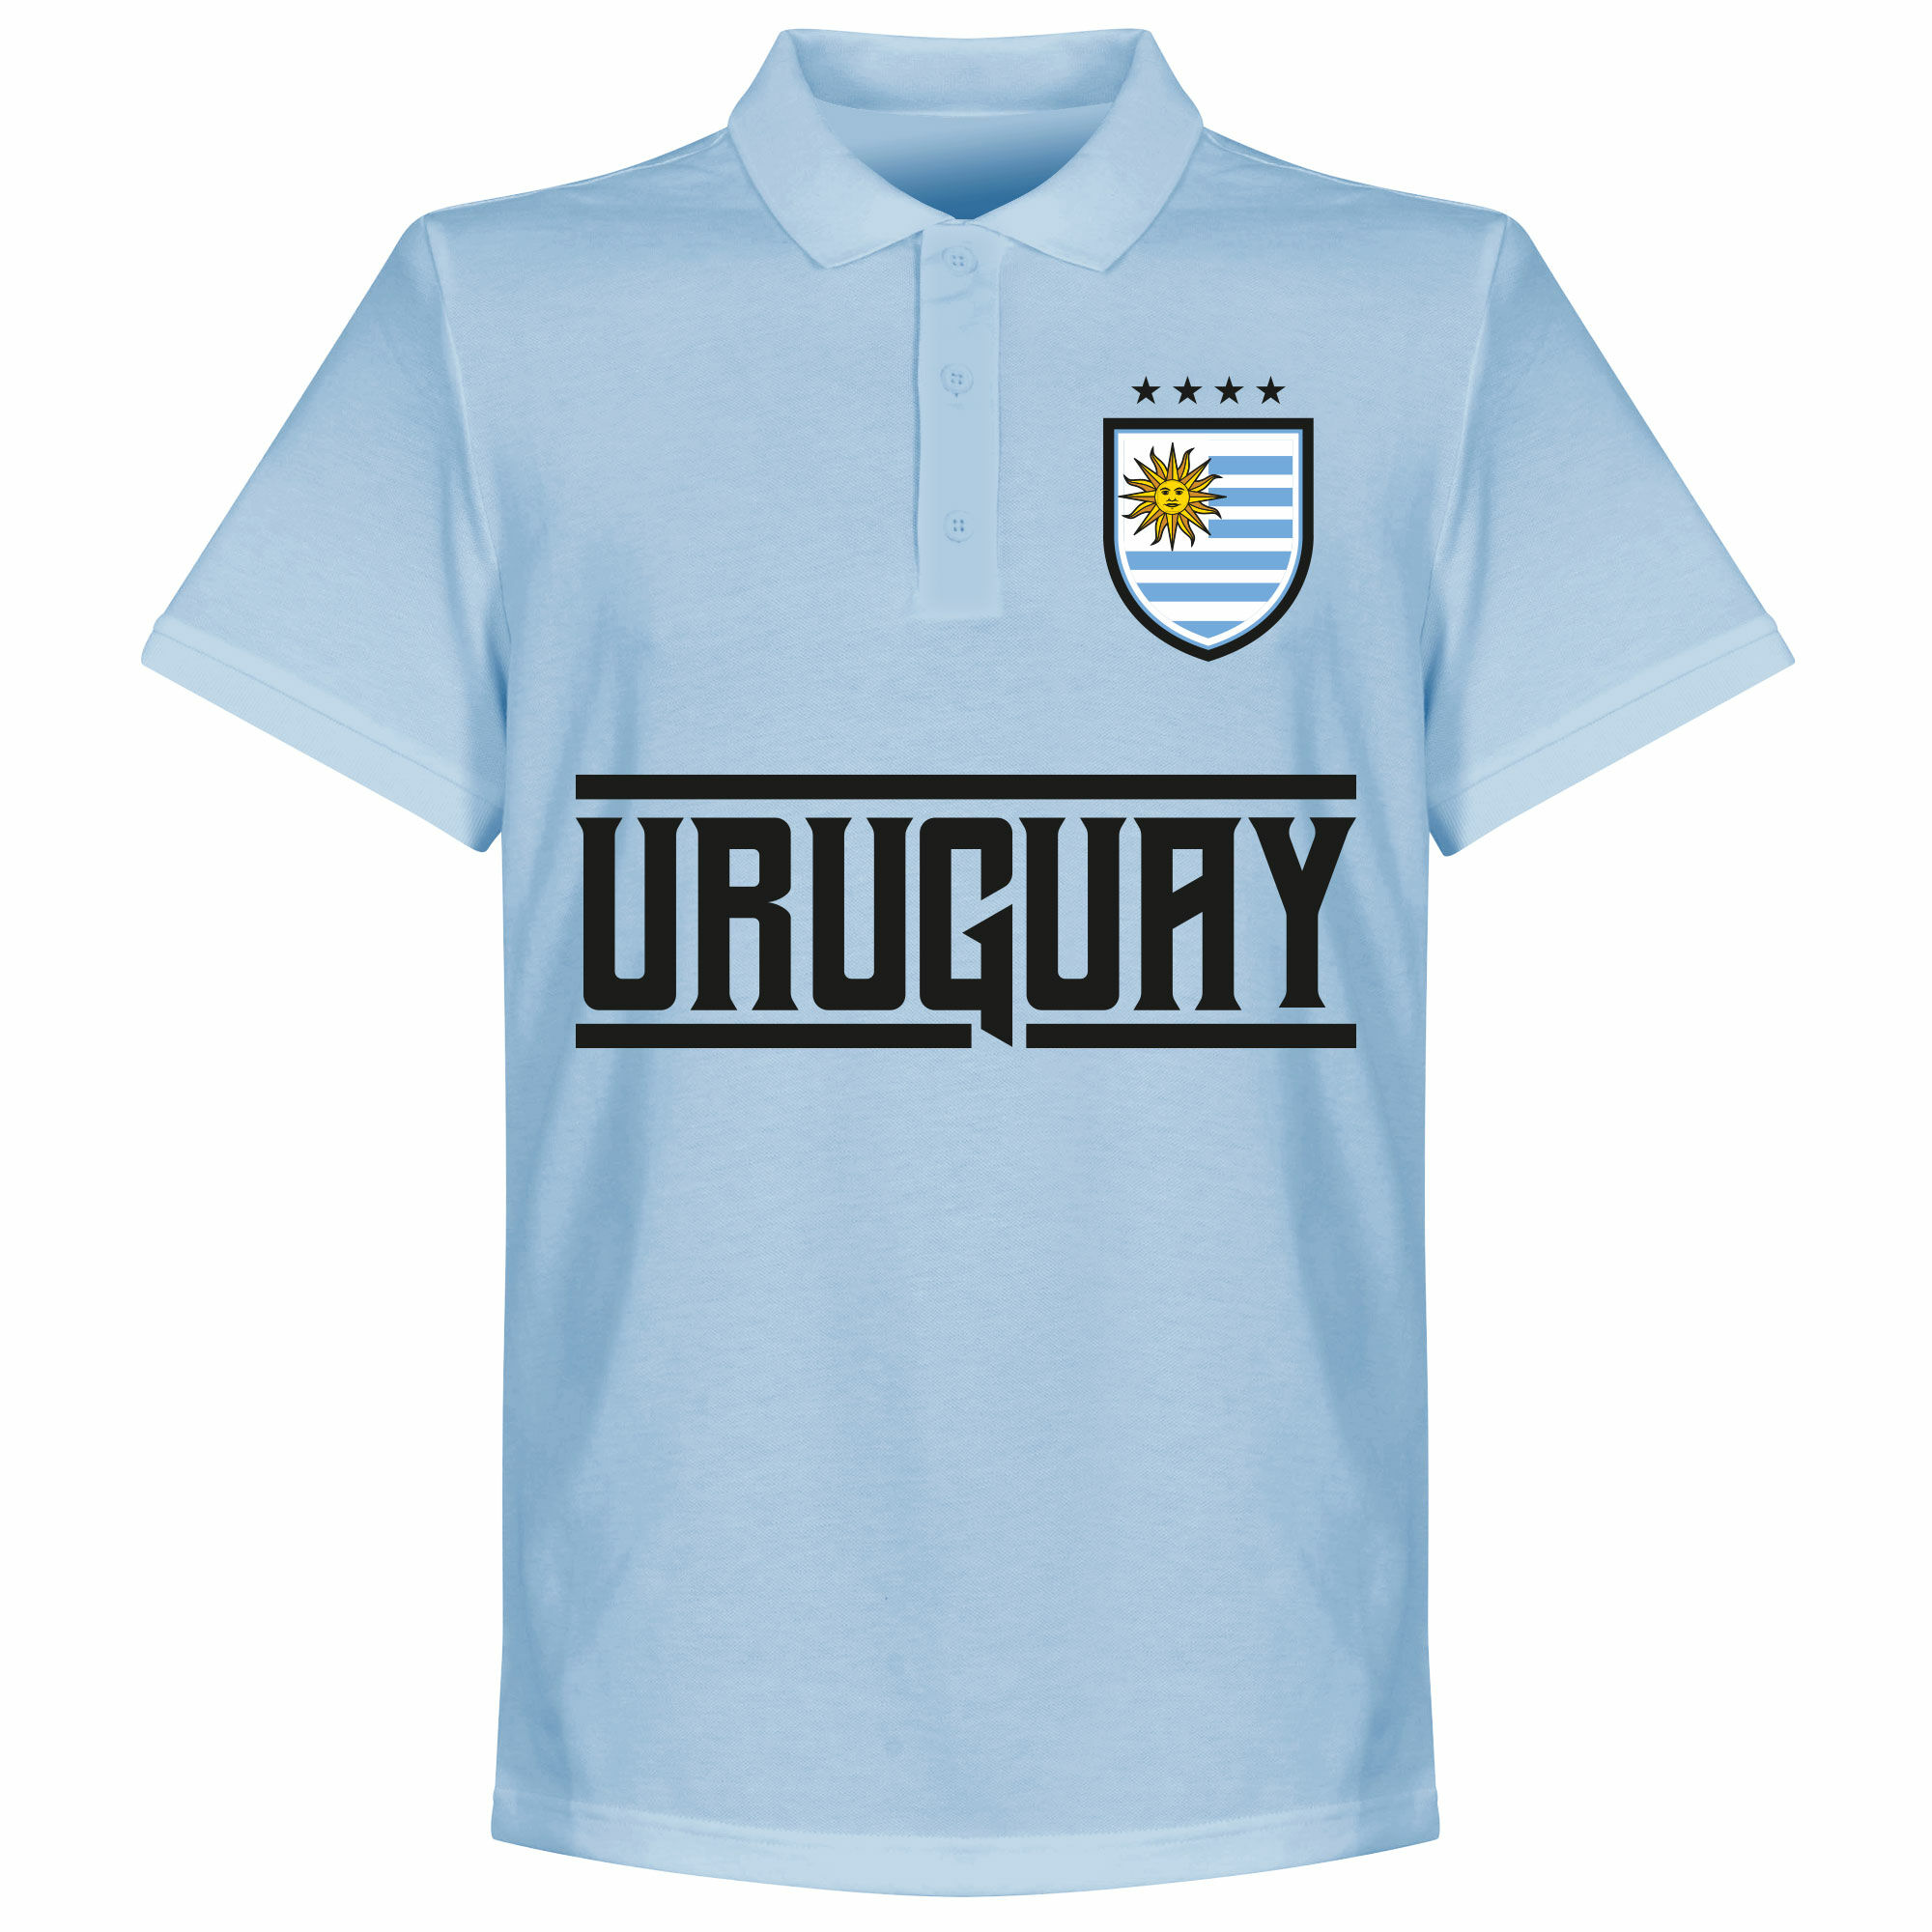 Uruguay - Tričko s límečkem - modré